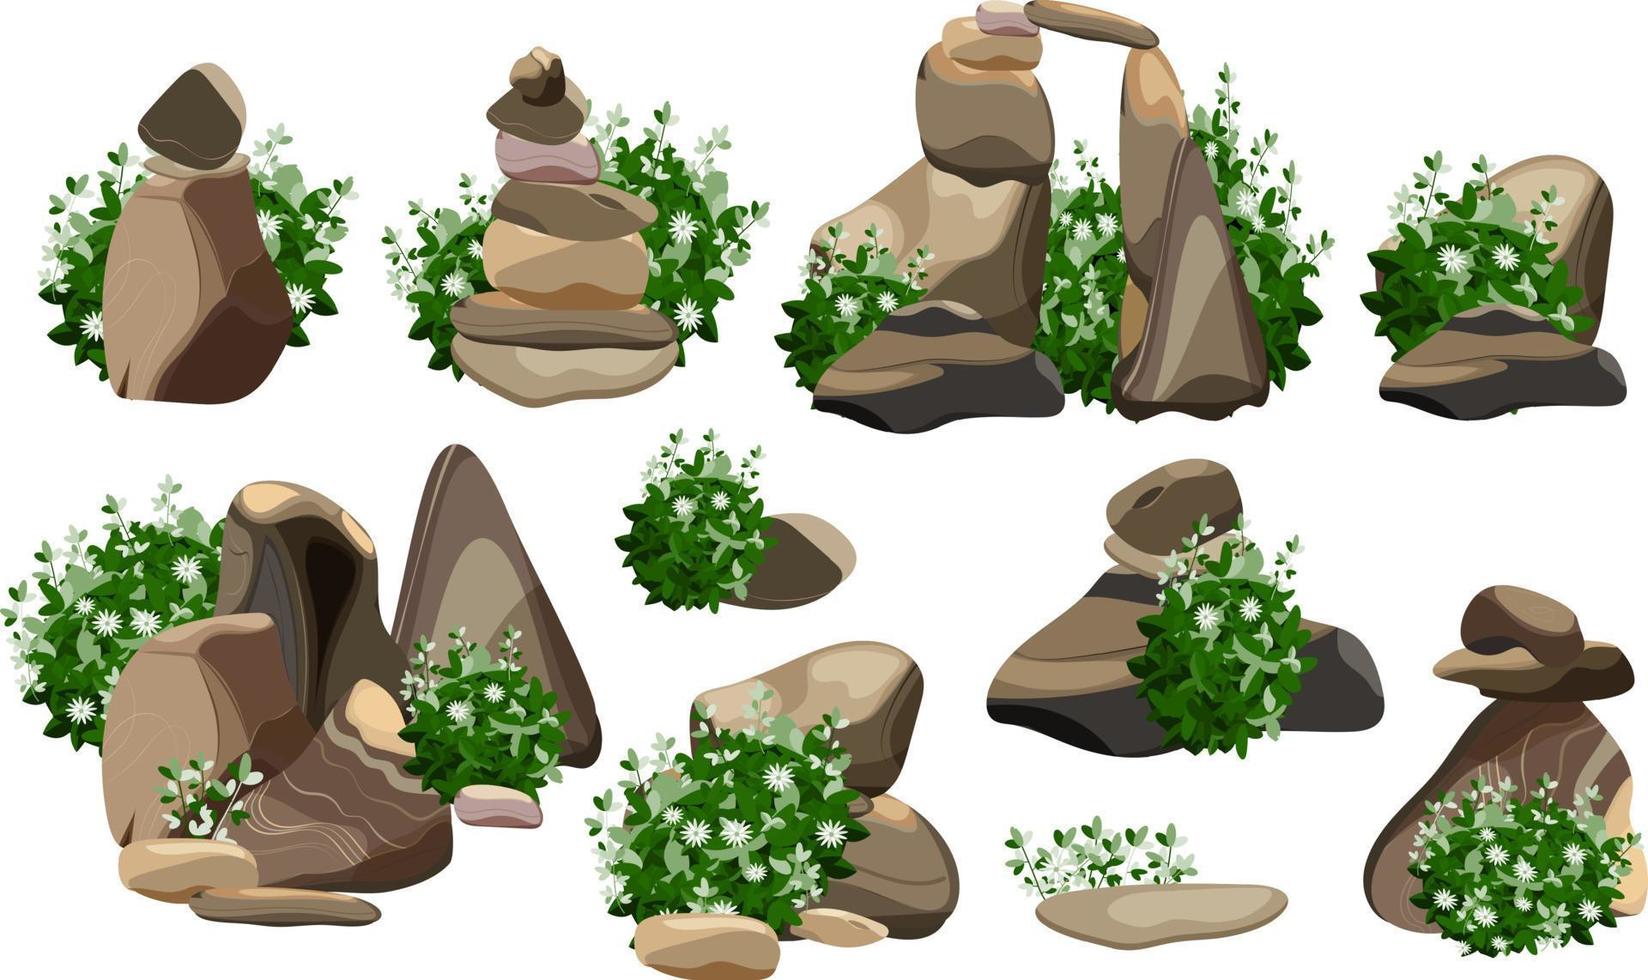 samling av stenar och växter av olika former.kustnära småsten, kullerstenar, grus, mineraler och geologisk formationer.rock fragment, stenblock och byggnad material. vektor